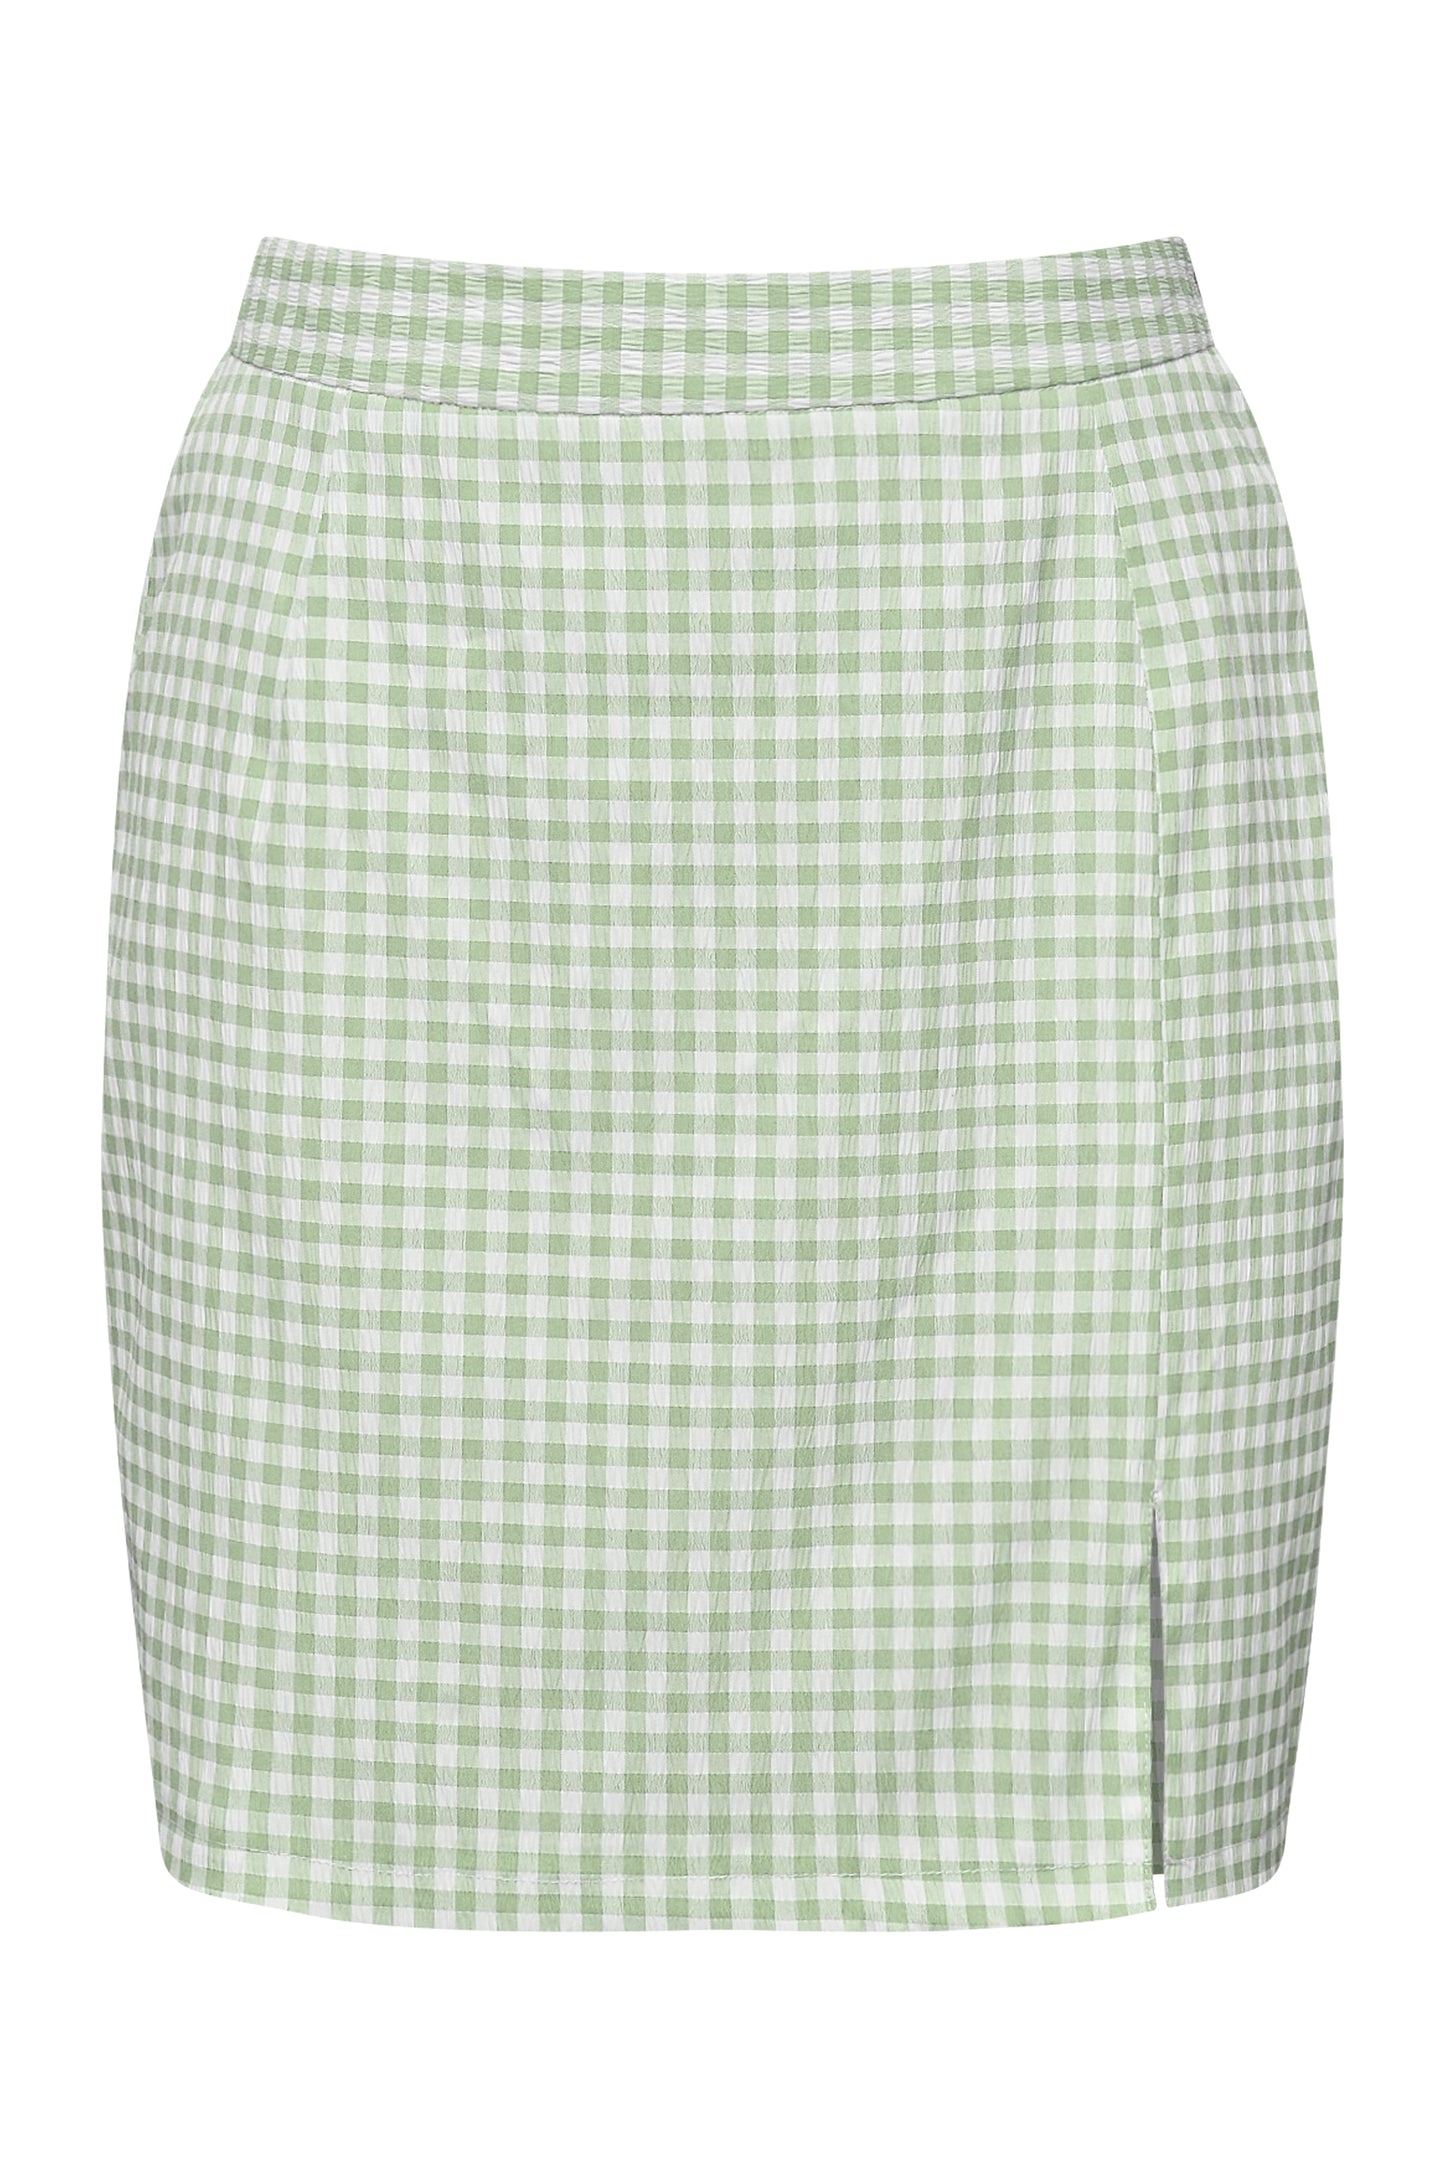 A-VIEW - Sam skirt - Mint